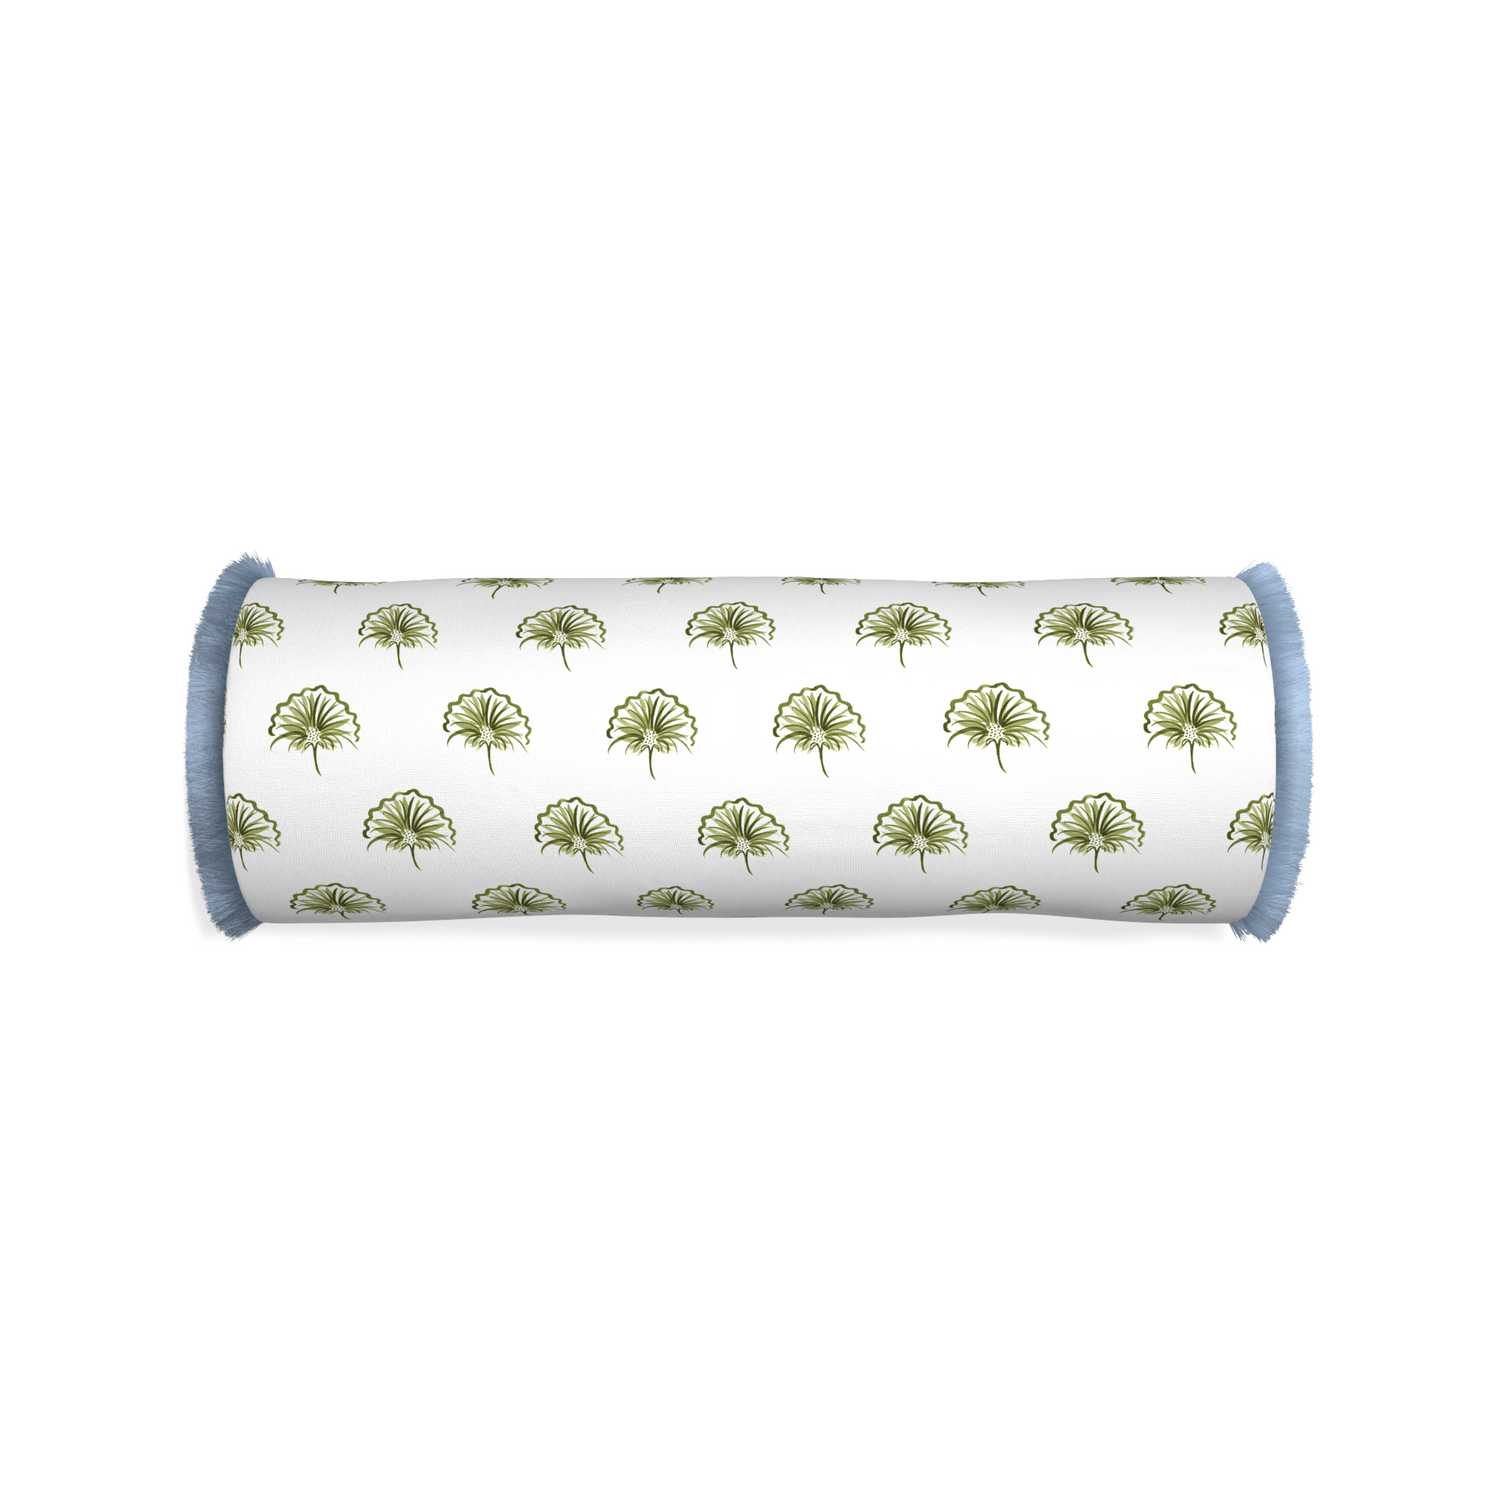 Bolster penelope moss custom pillow with sky fringe on white background